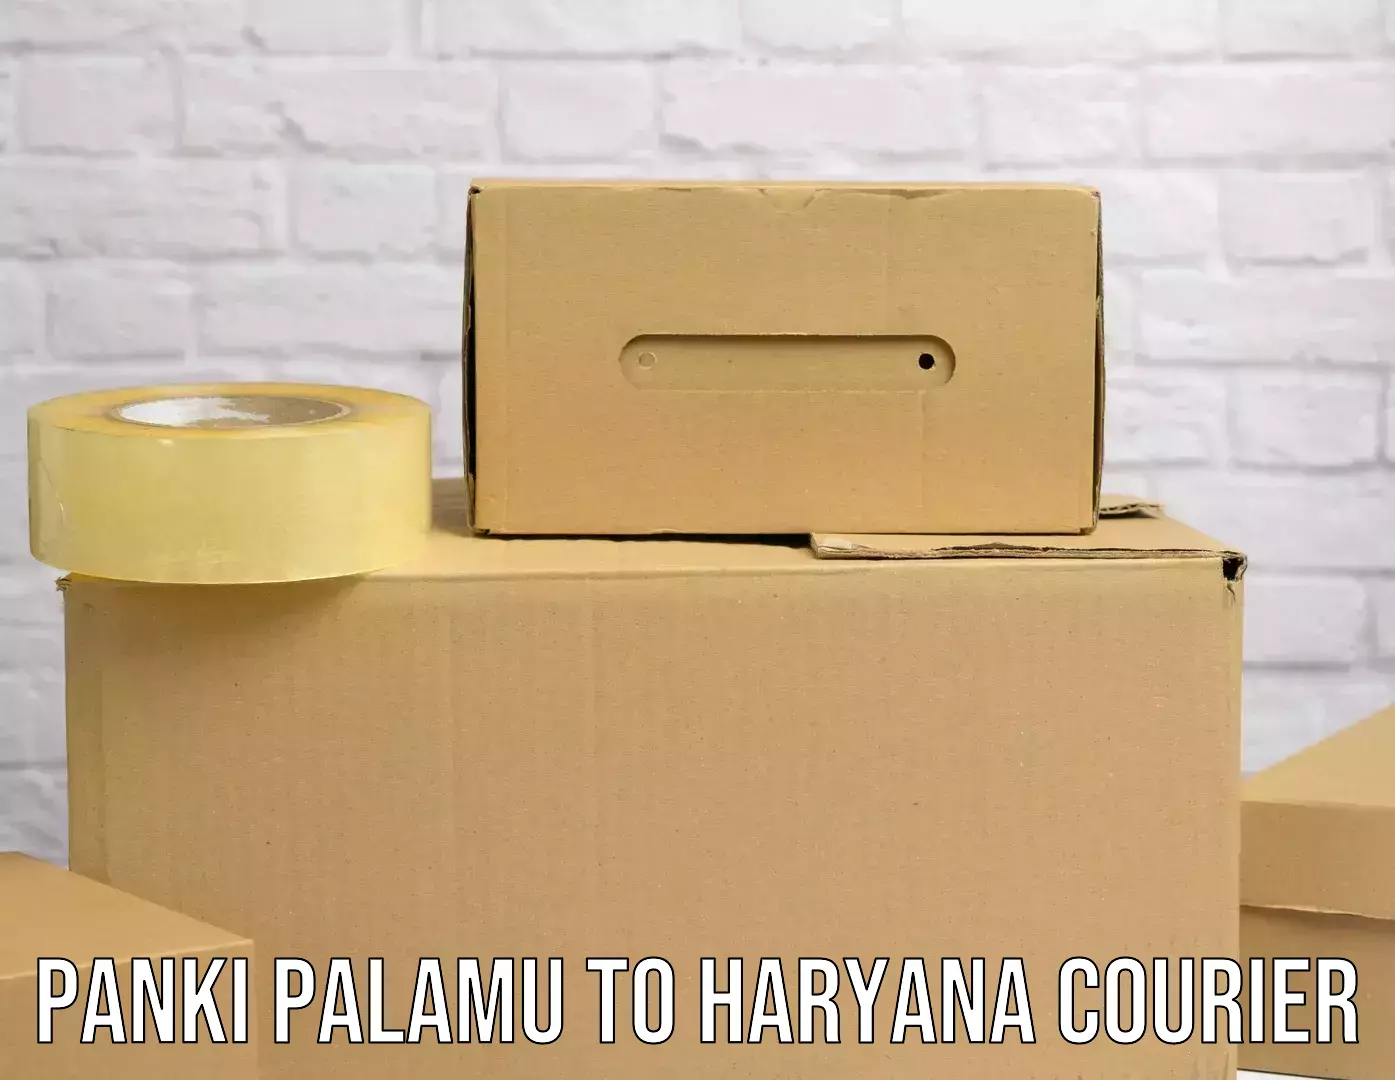 Specialized courier services Panki Palamu to Narwana